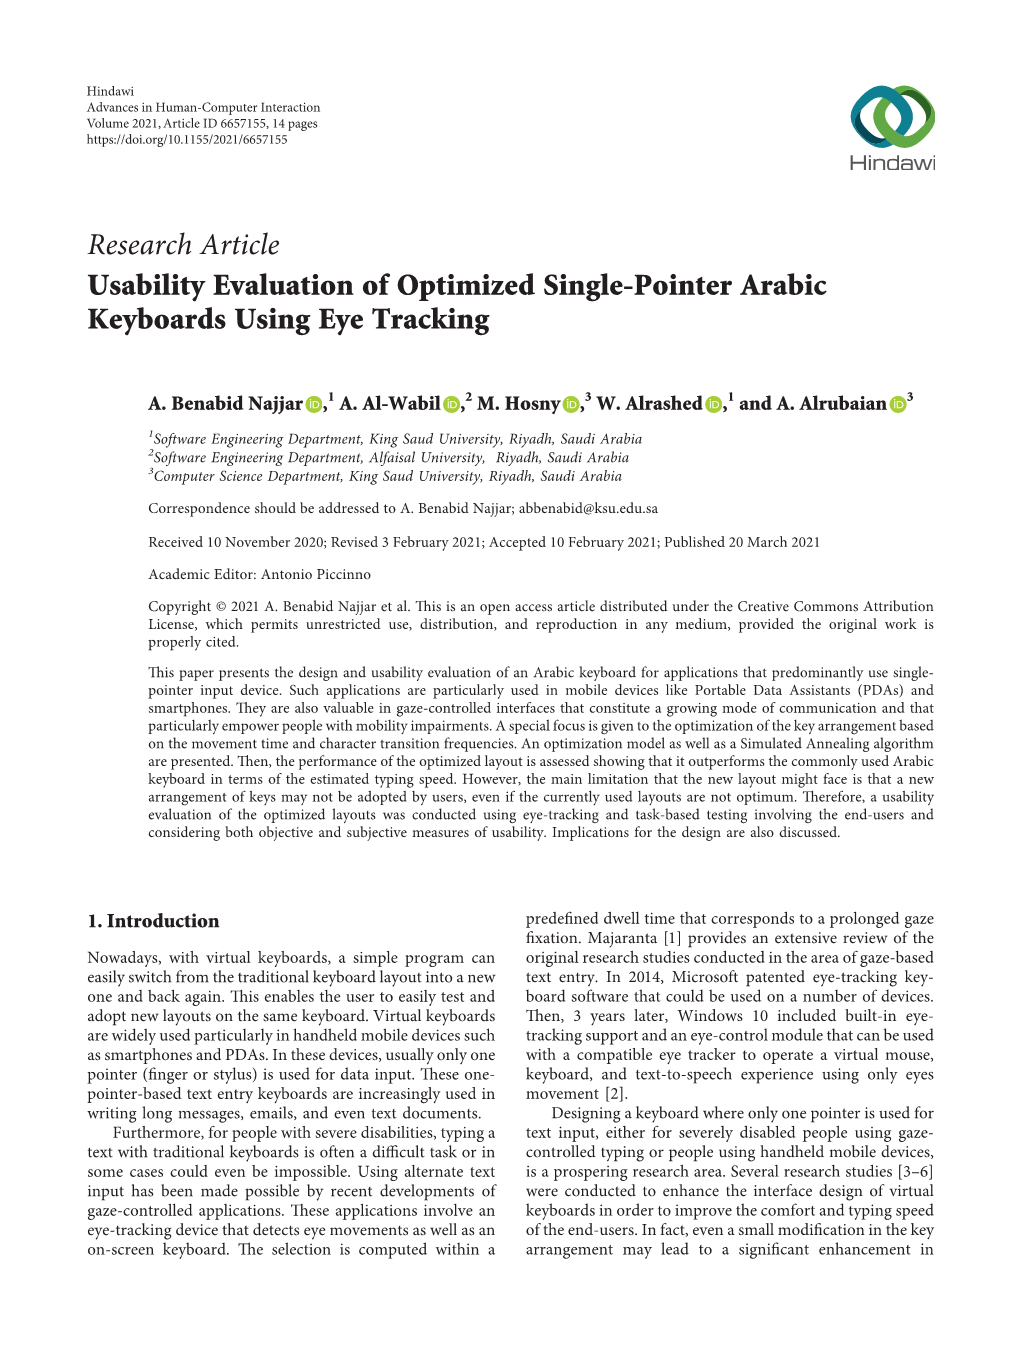 Usability Evaluation of Optimized Single-Pointer Arabic Keyboards Using Eye Tracking